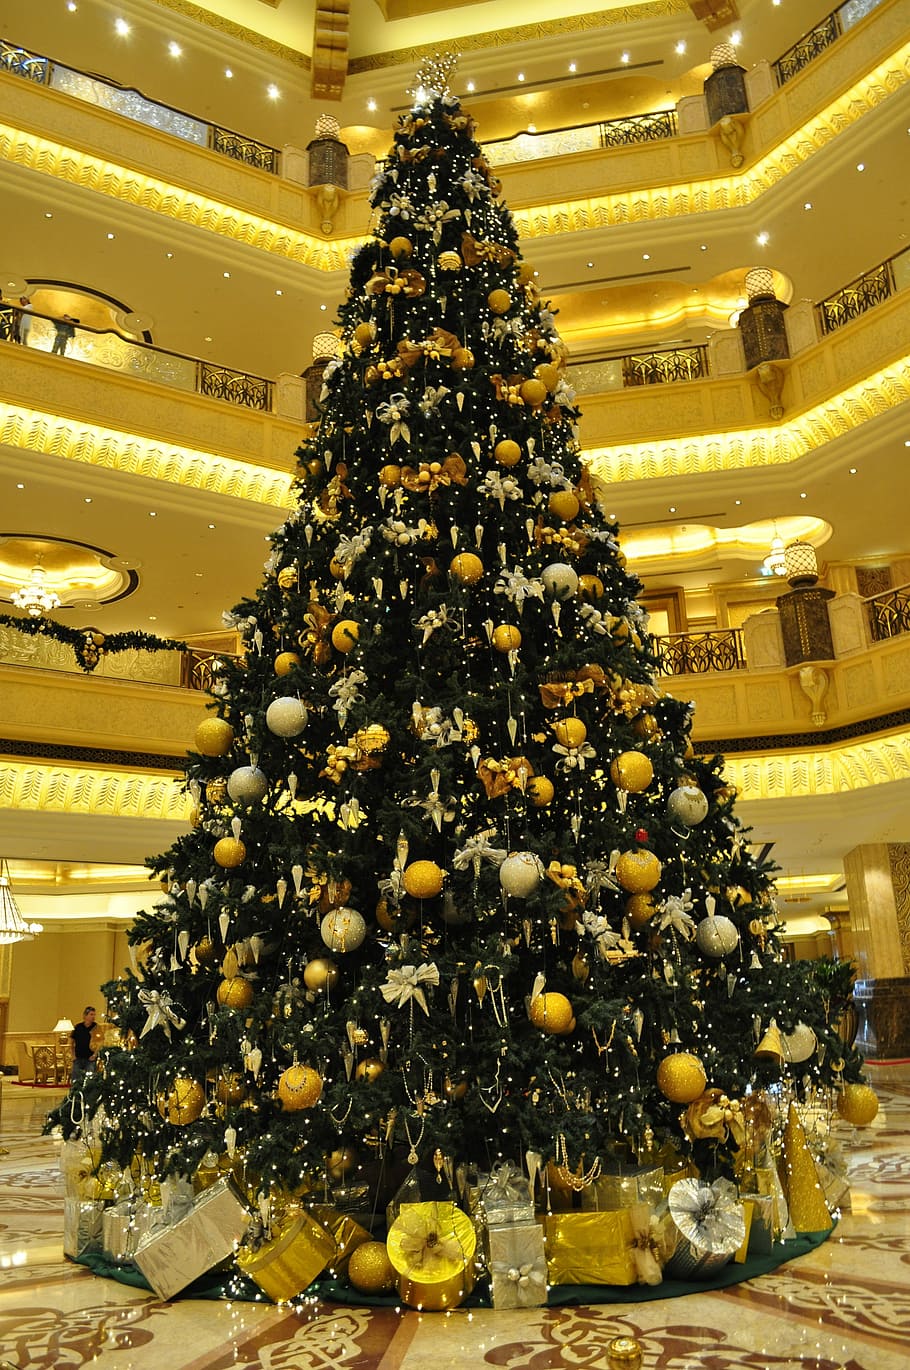 Christmas Tree, Abu Dhabi, emirates palace hotel, jewels, expensive, emirates, abundance, indoors, yellow, christmas